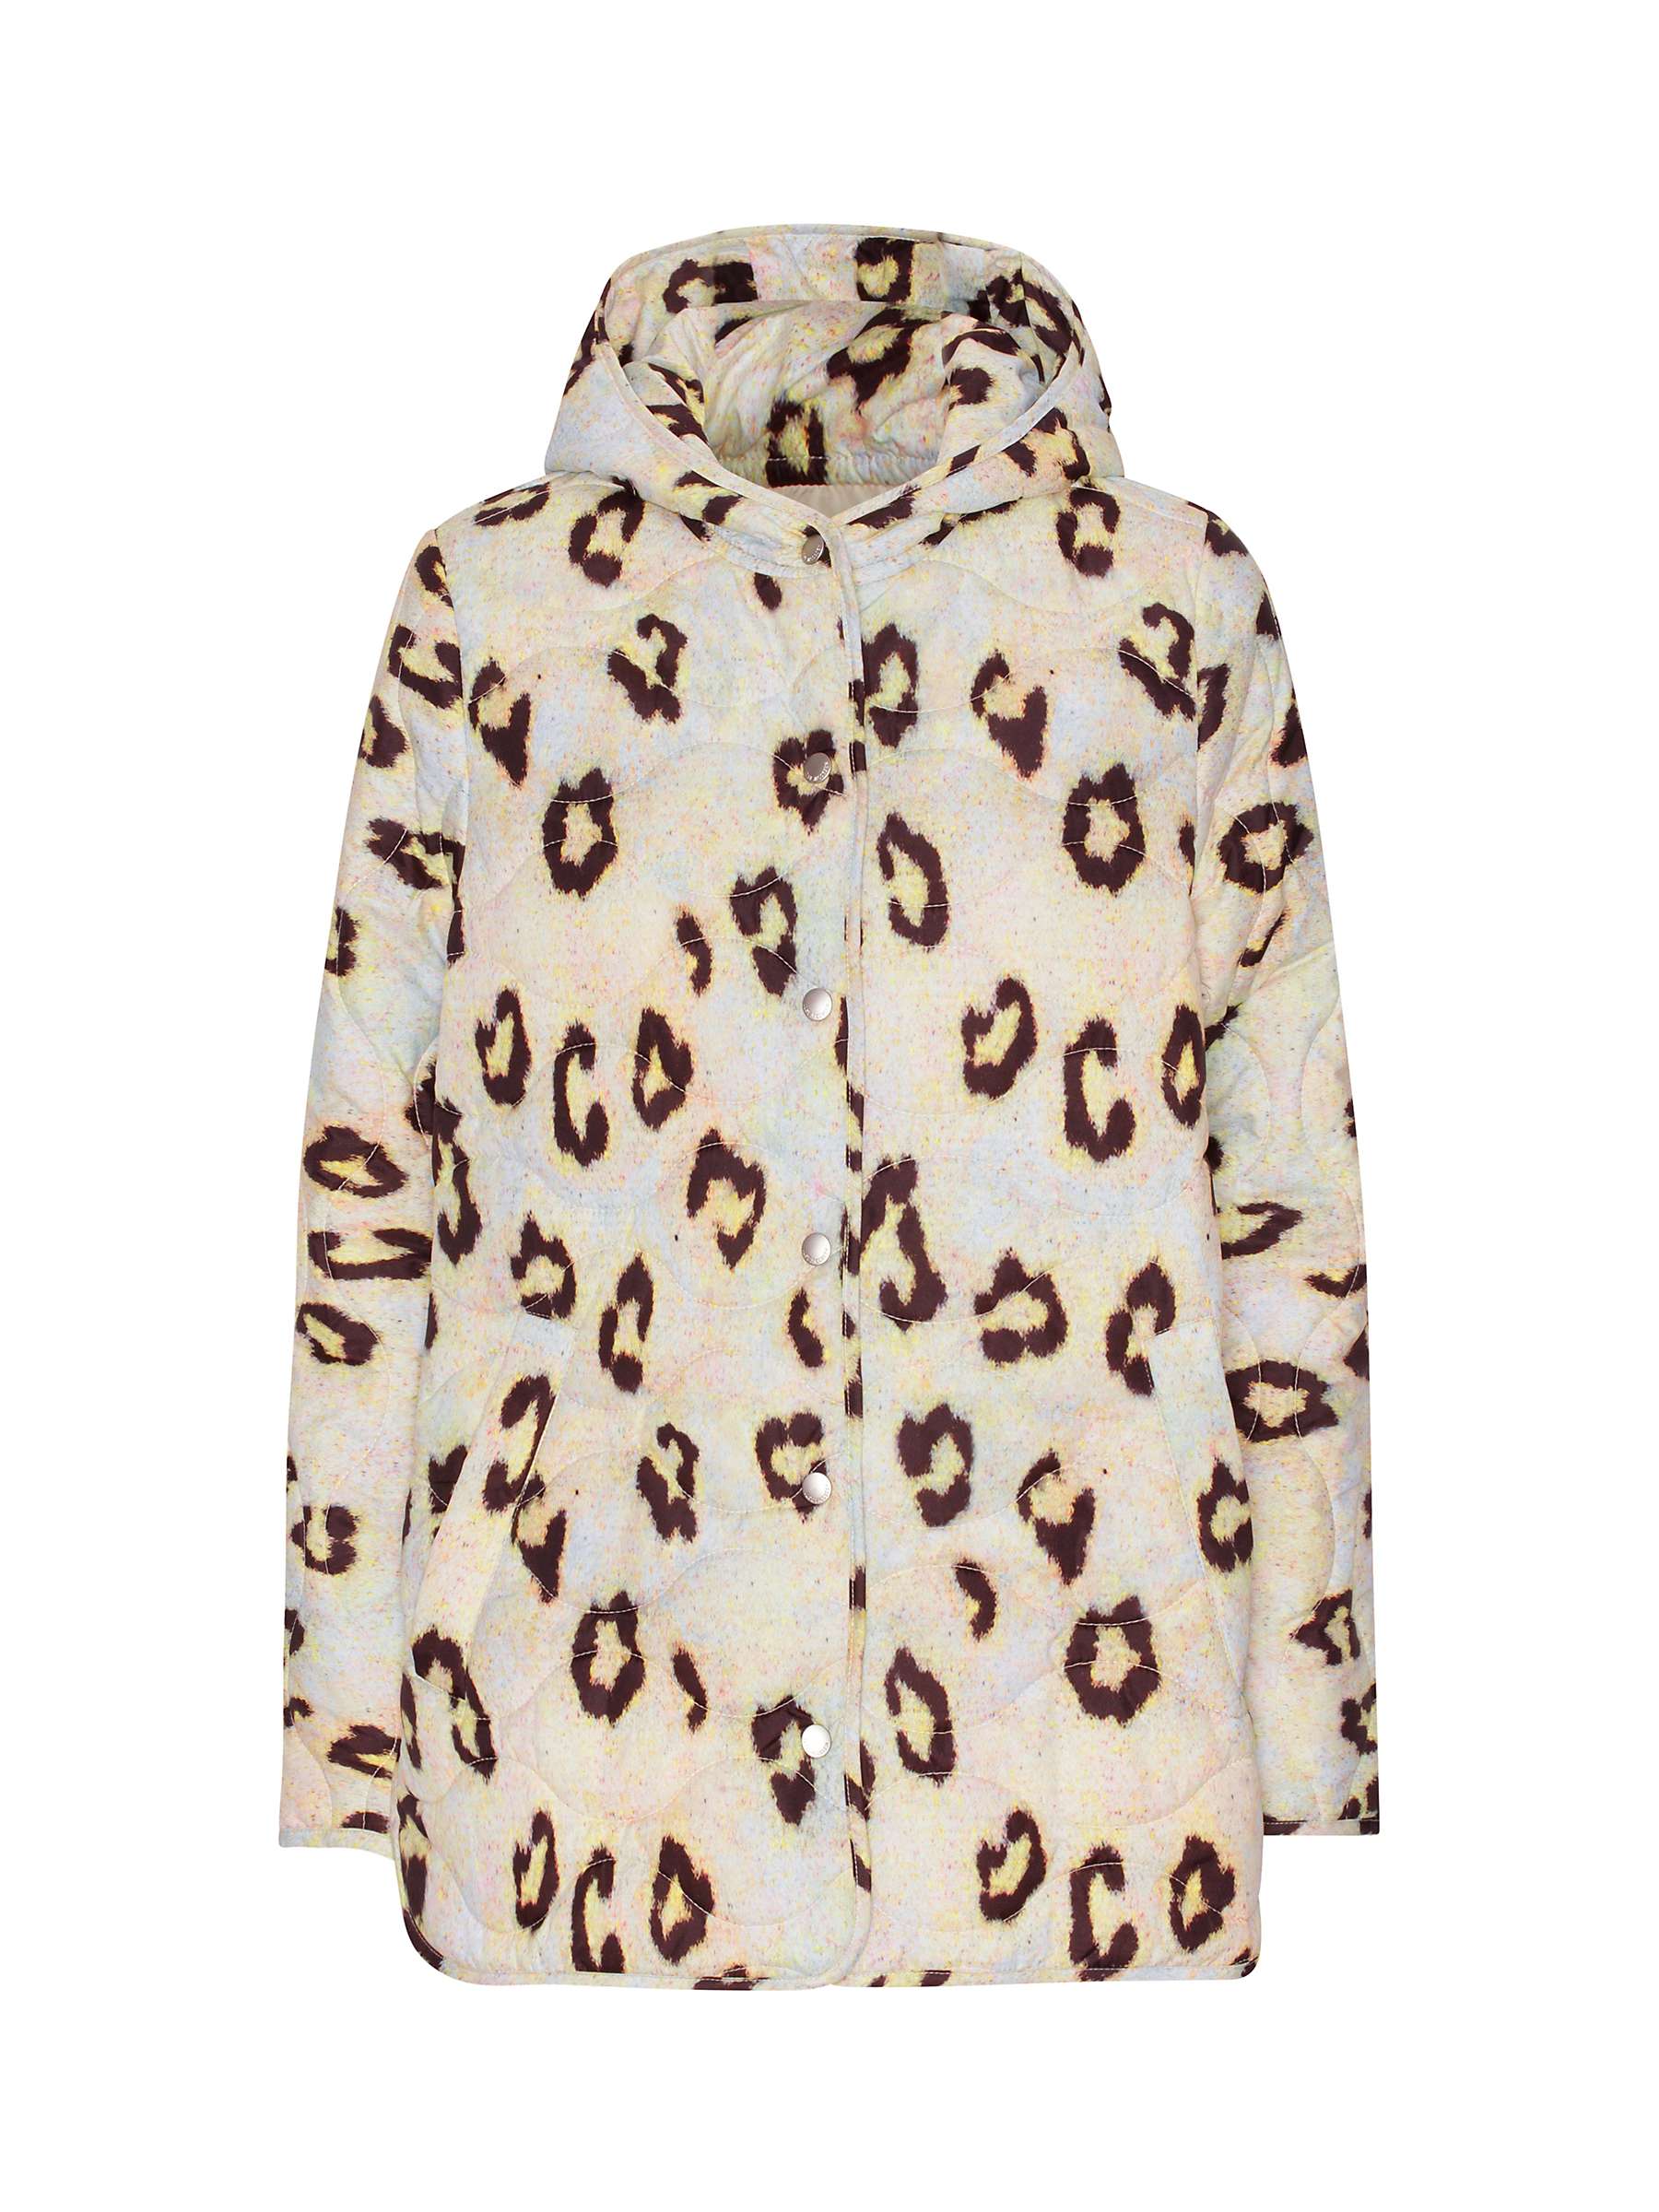 Buy Ilse Jacobsen Hornbæk Leopard Print Quilted Hooded Jacket, Multi Online at johnlewis.com